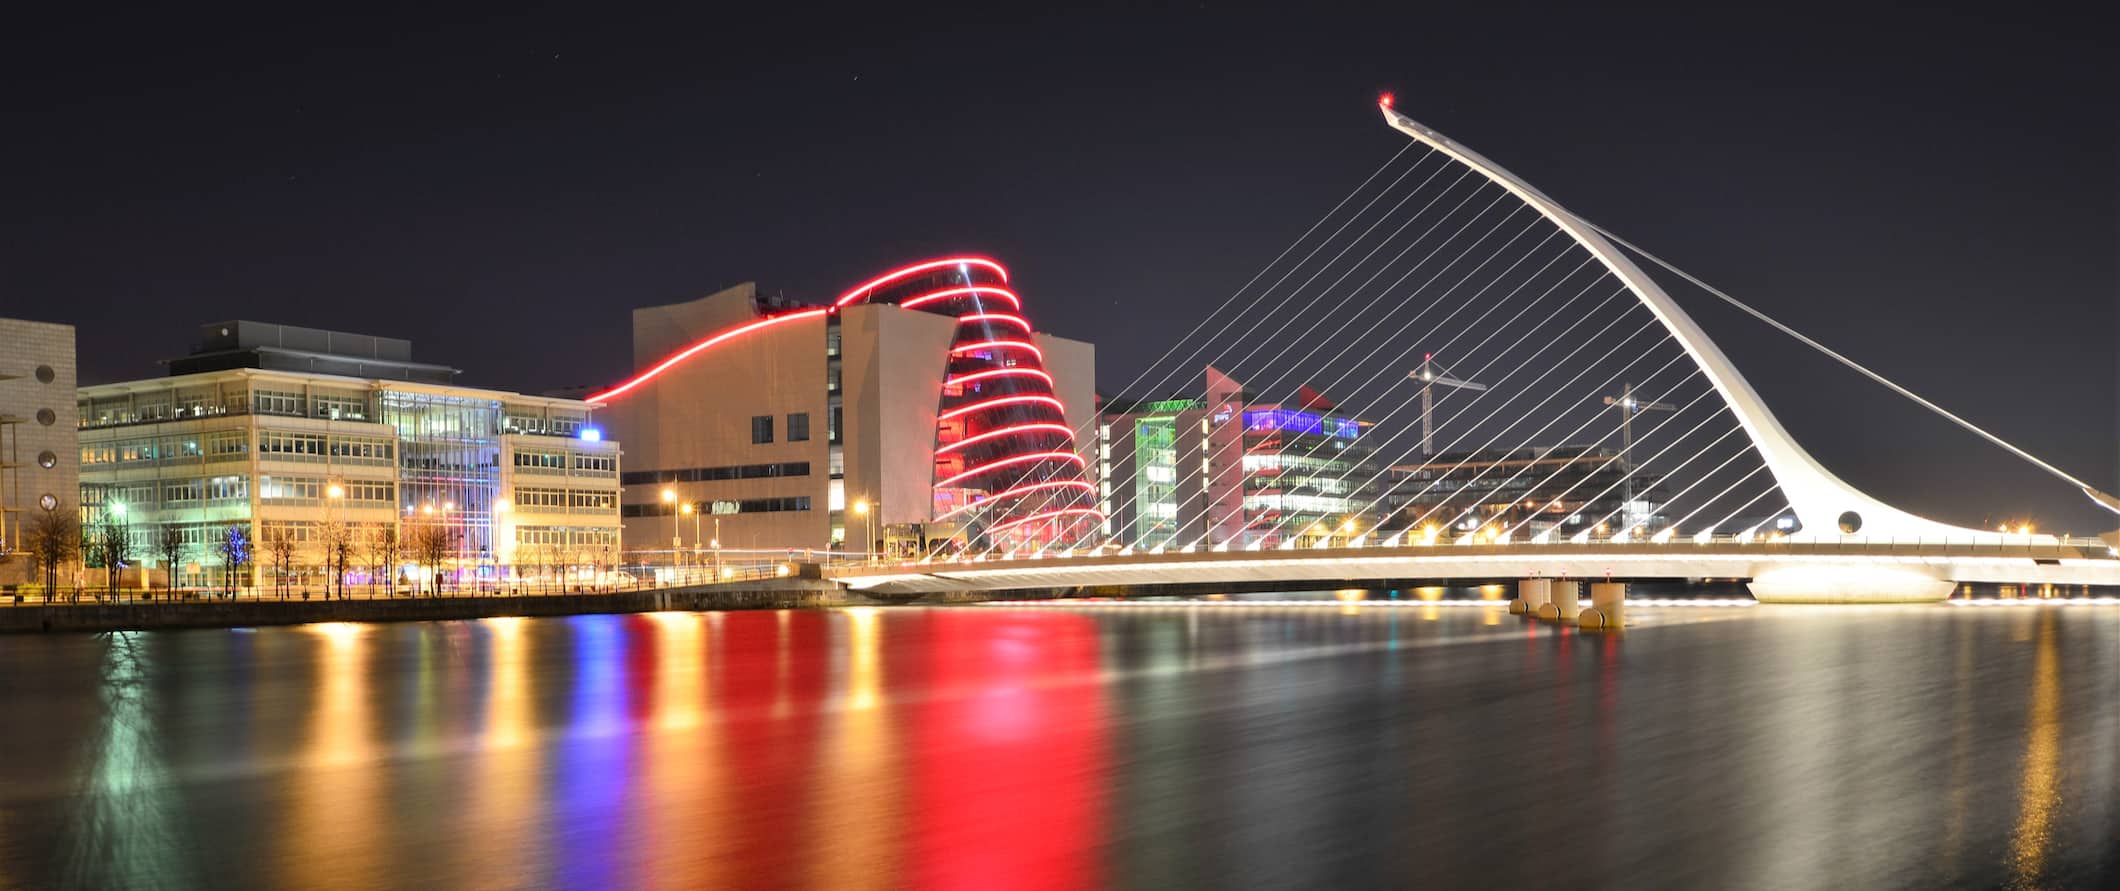 Cidade de Dublin, Irlanda iluminada pela água em uma noite escura